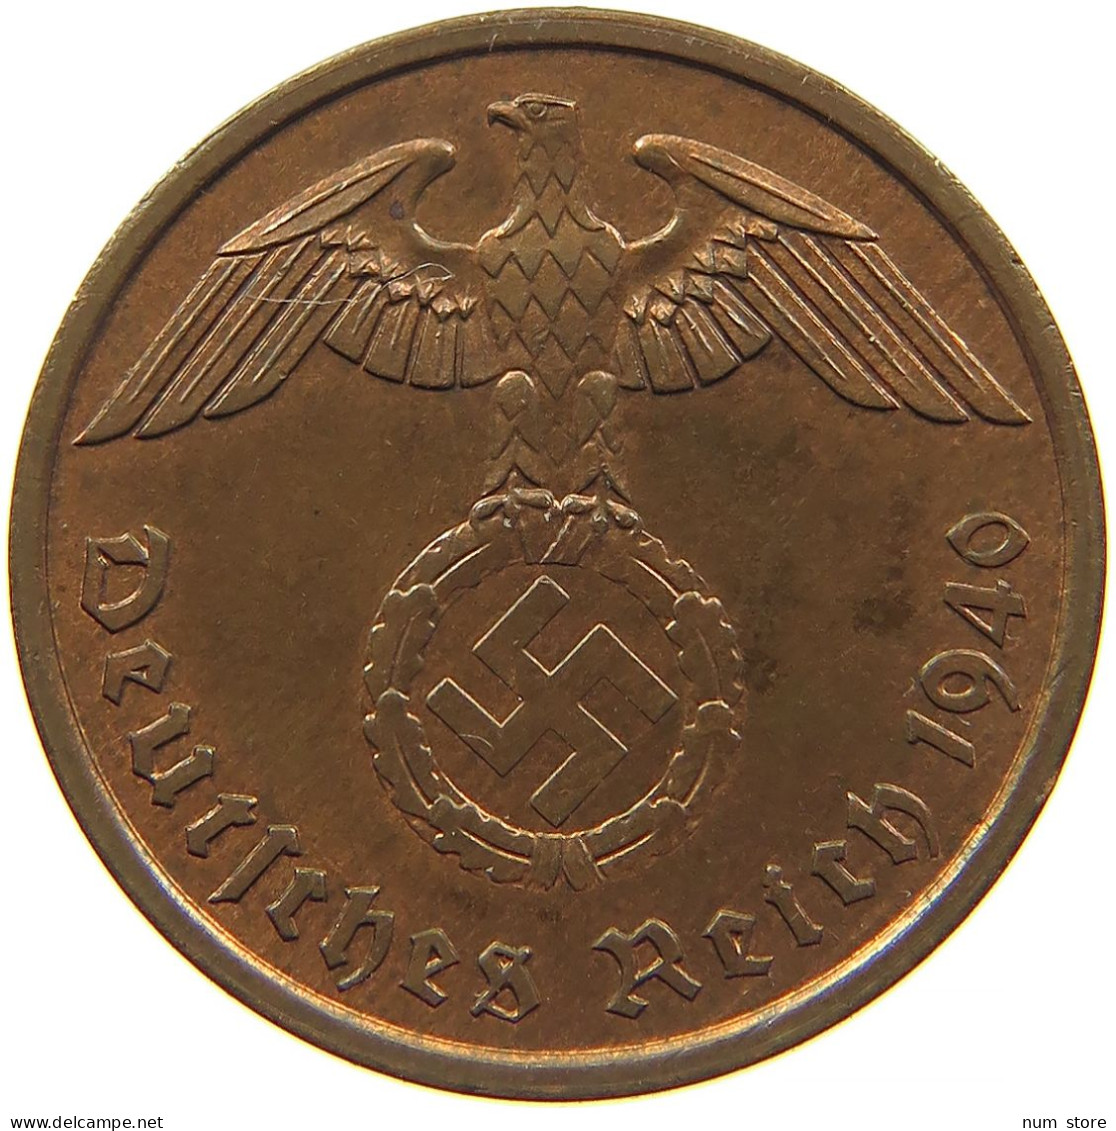 GERMANY 2 REICHSPFENNIG 1940 A #s084 0519 - 2 Reichspfennig